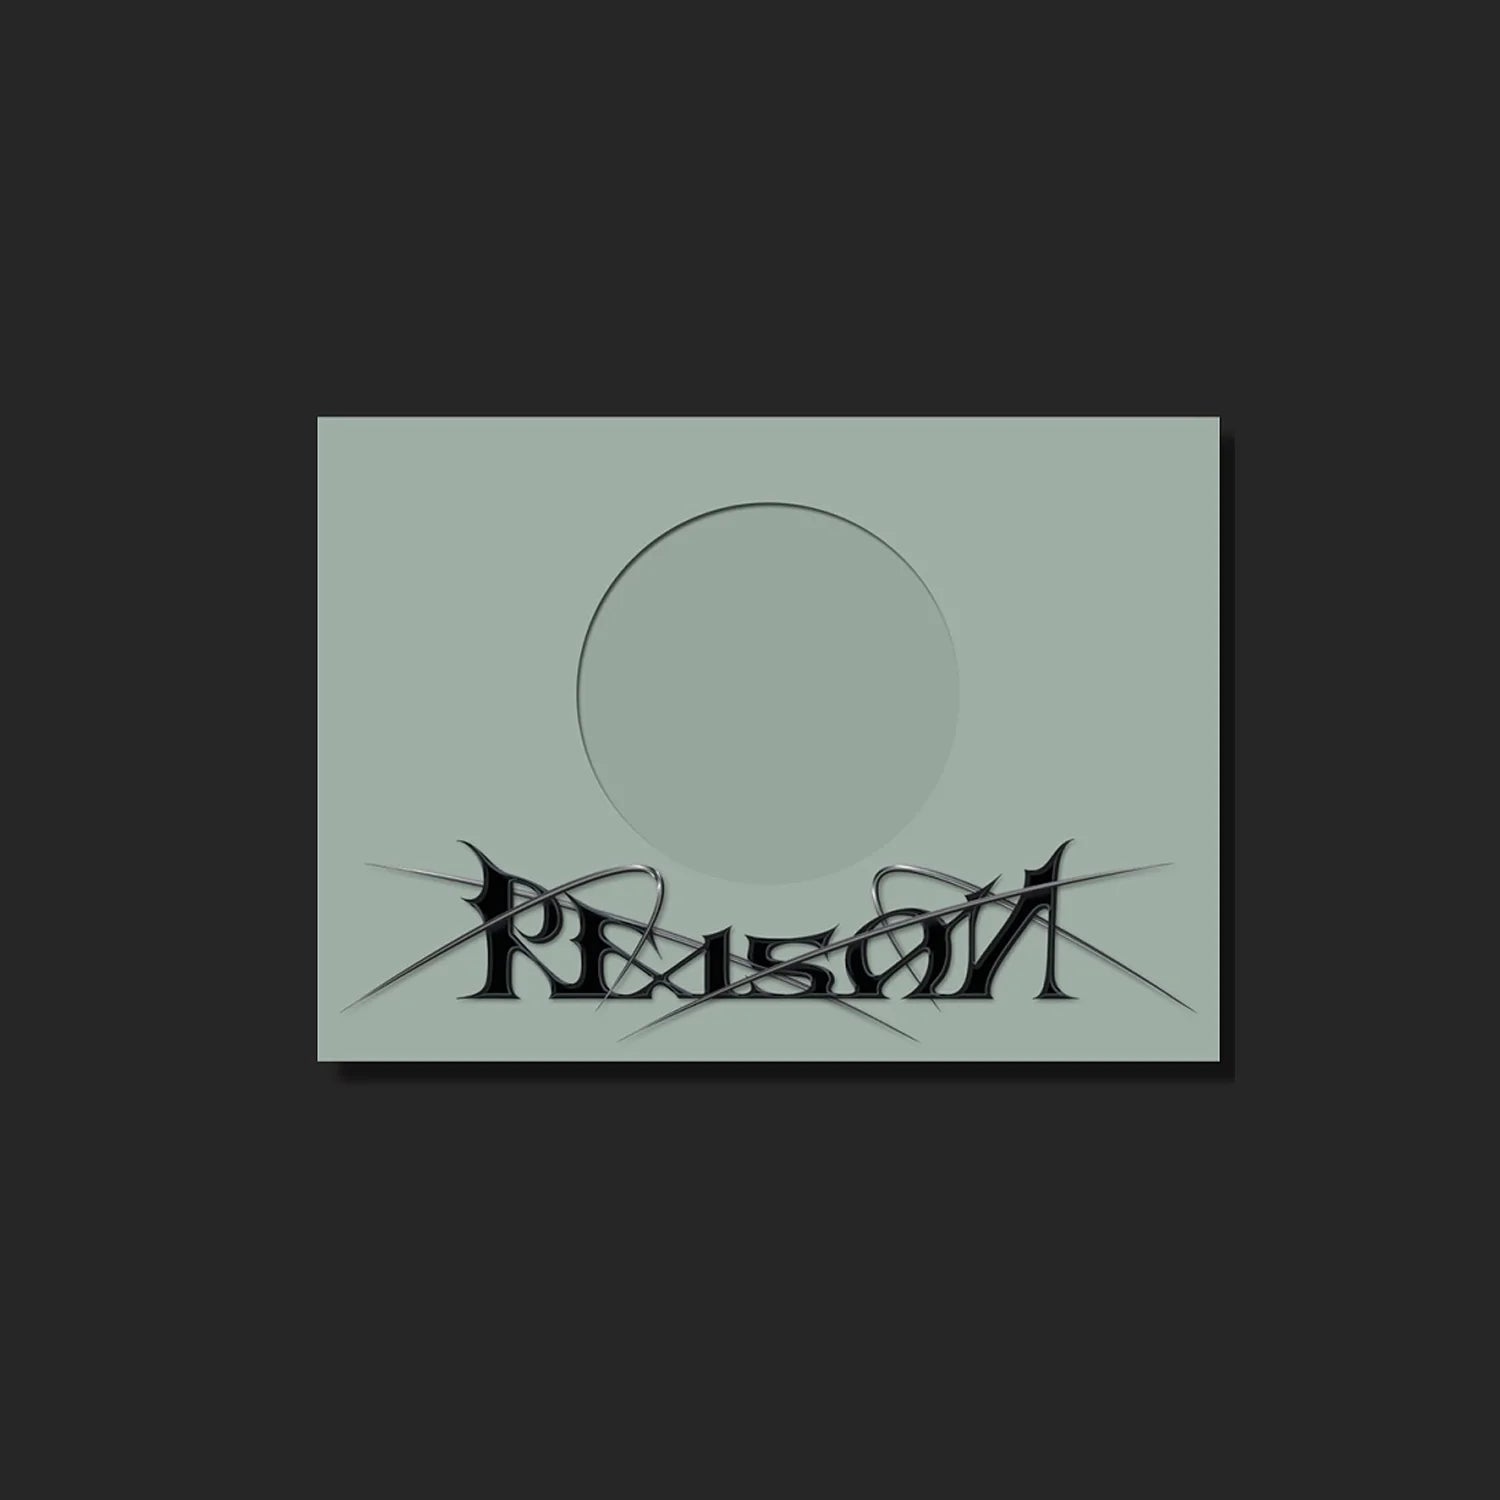 MONSTA X 12TH MINI ALBUM 'REASON' VERSION 4 COVER